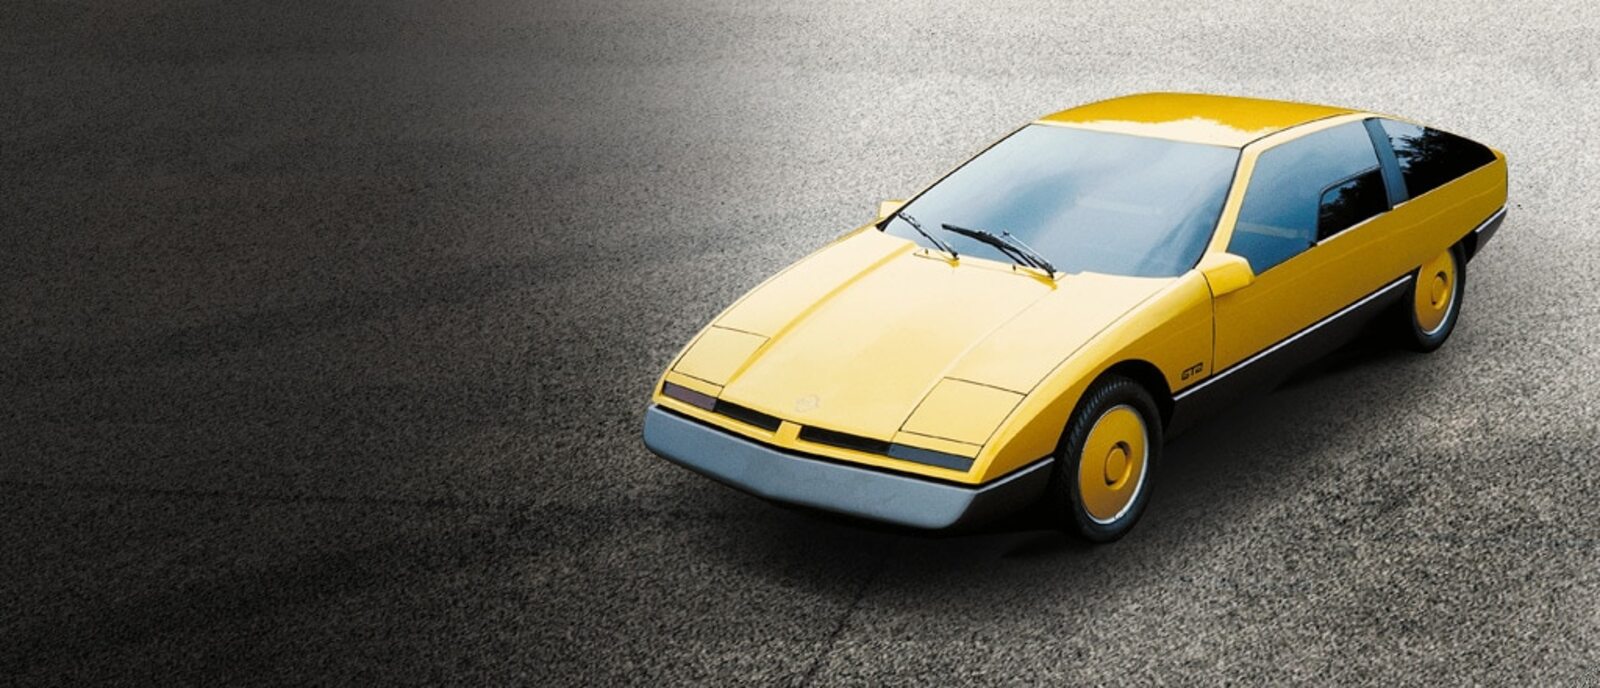 Opel Concept Car Gt2 1975